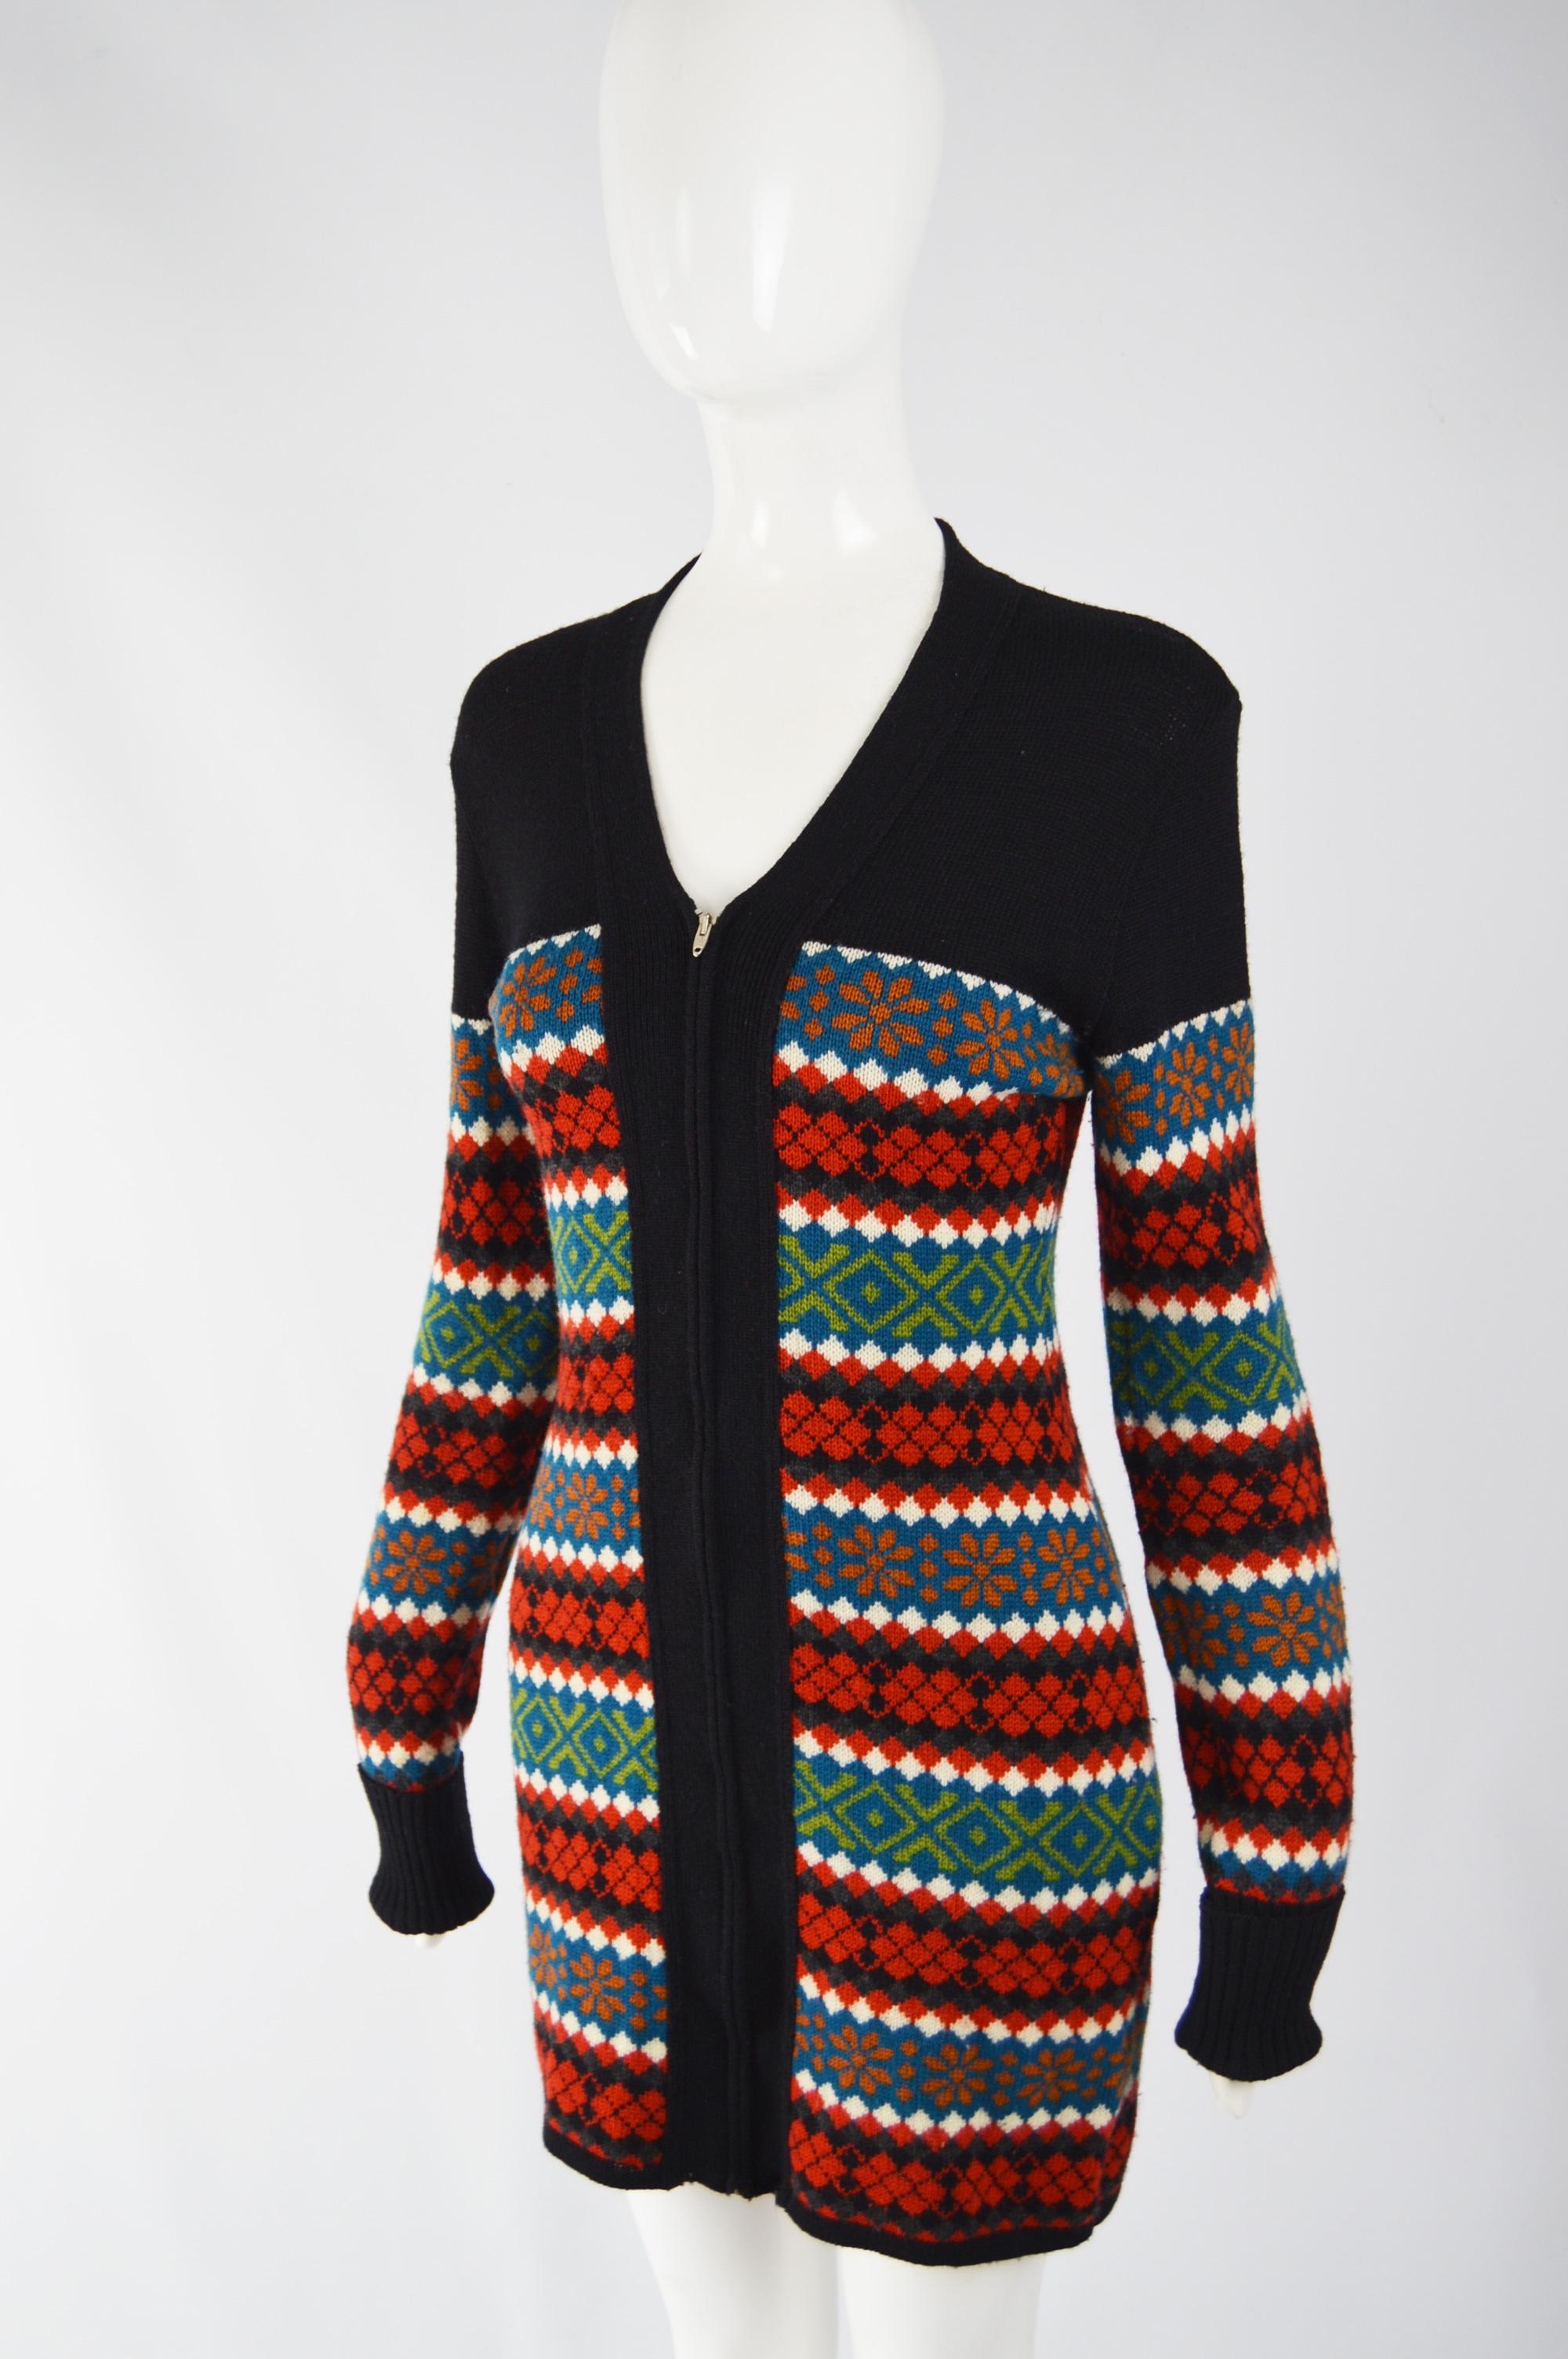 paul knit sweater